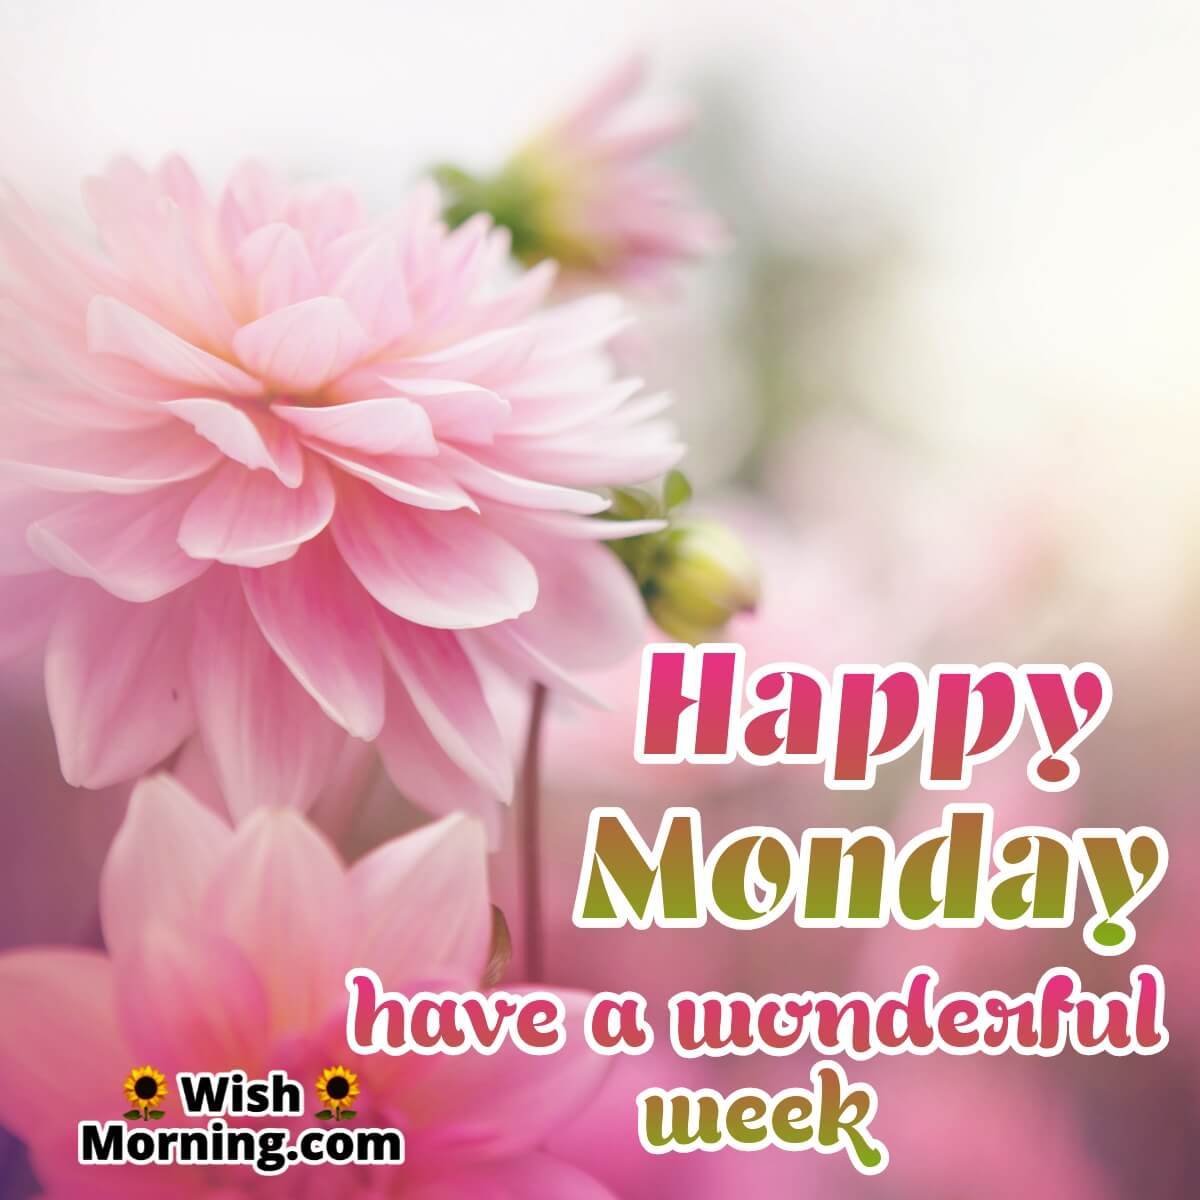 Wonderful Monday Wish